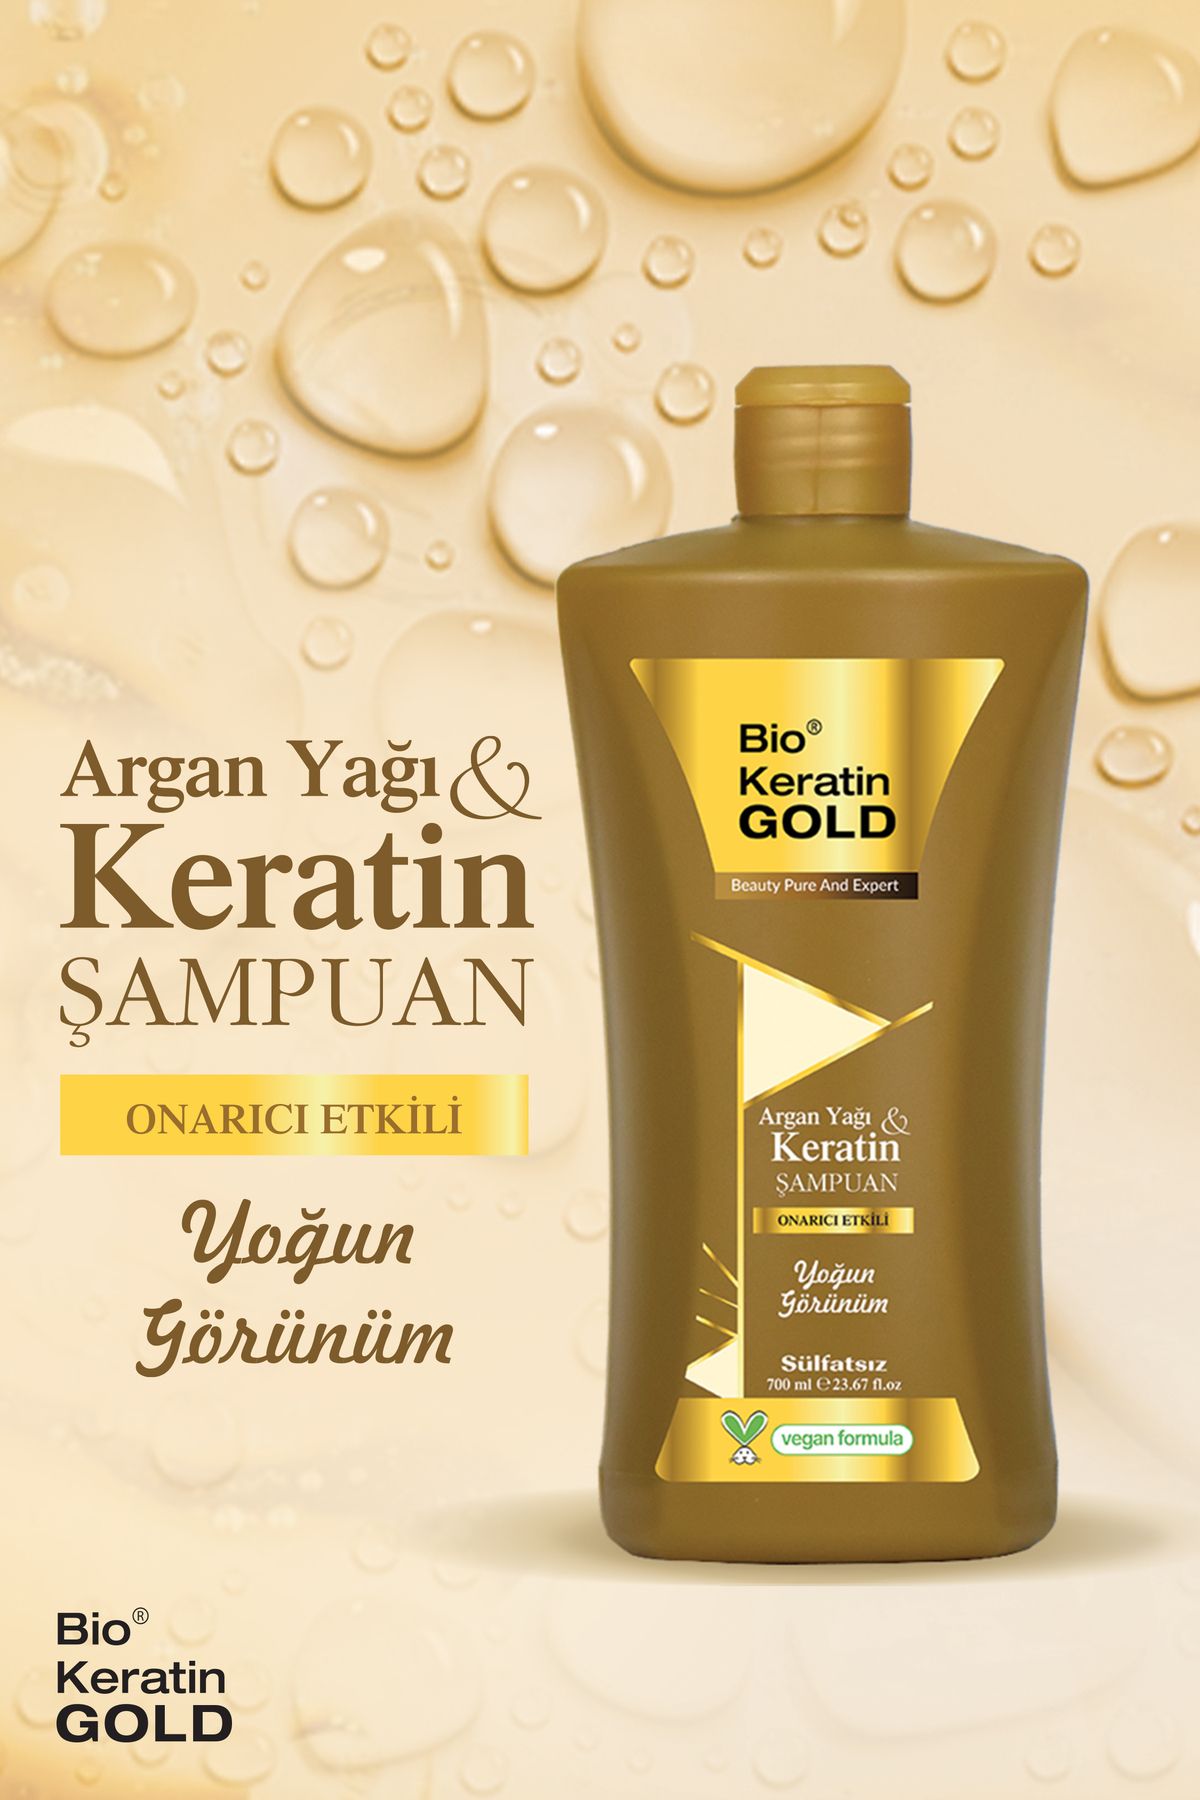 Bio Keratin Gold Argan Yağı & Keratin Onarıcı Sülfatsız Şampuan 700 ml